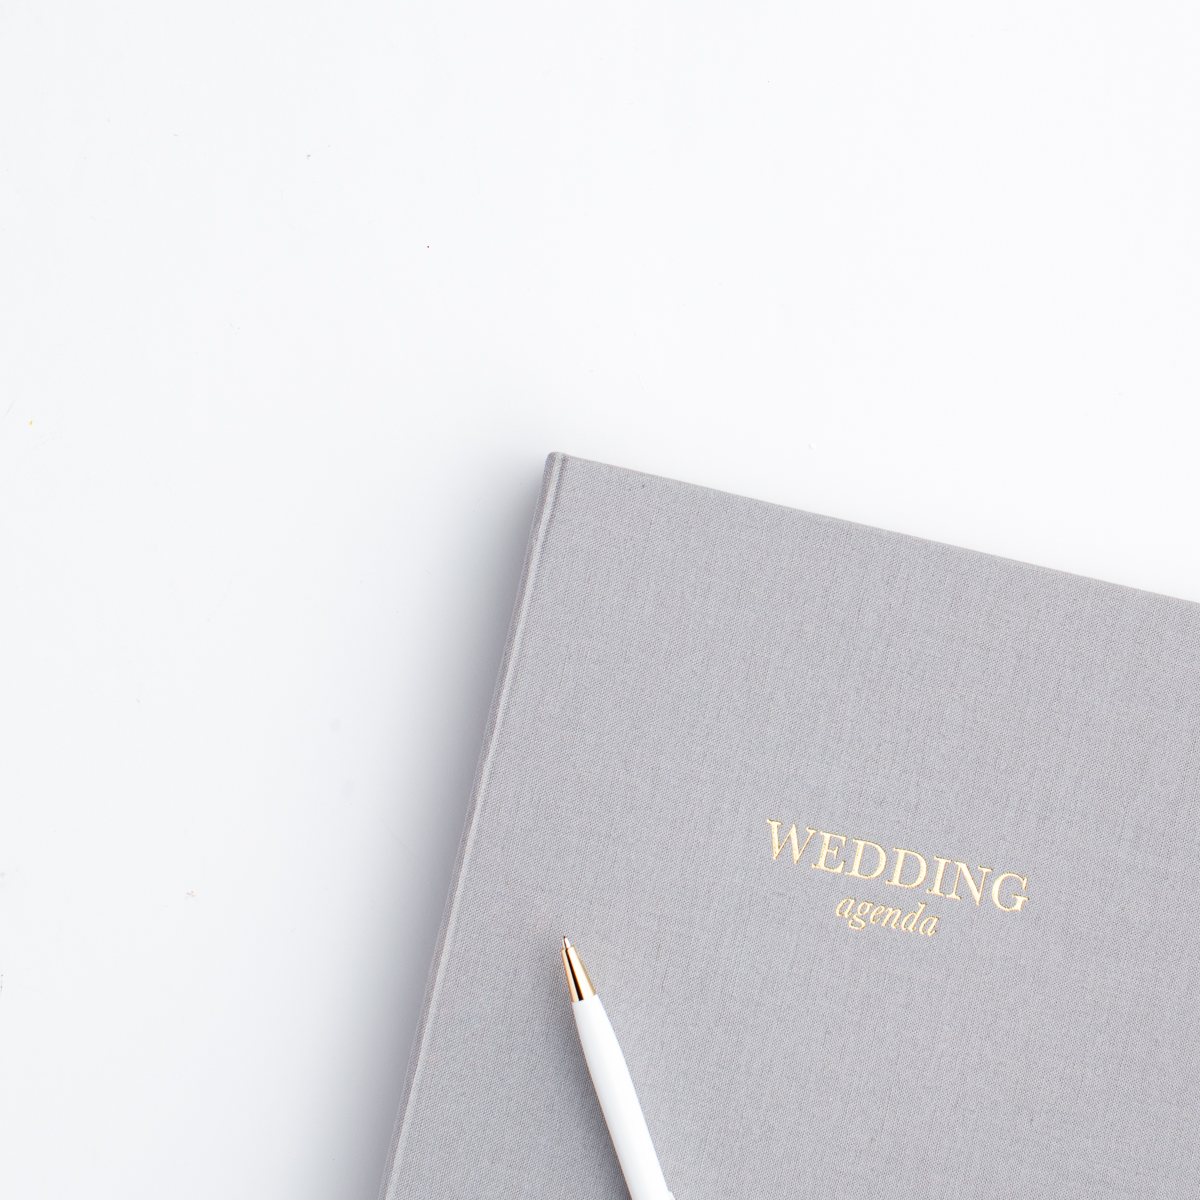 wedding agenda book and pen